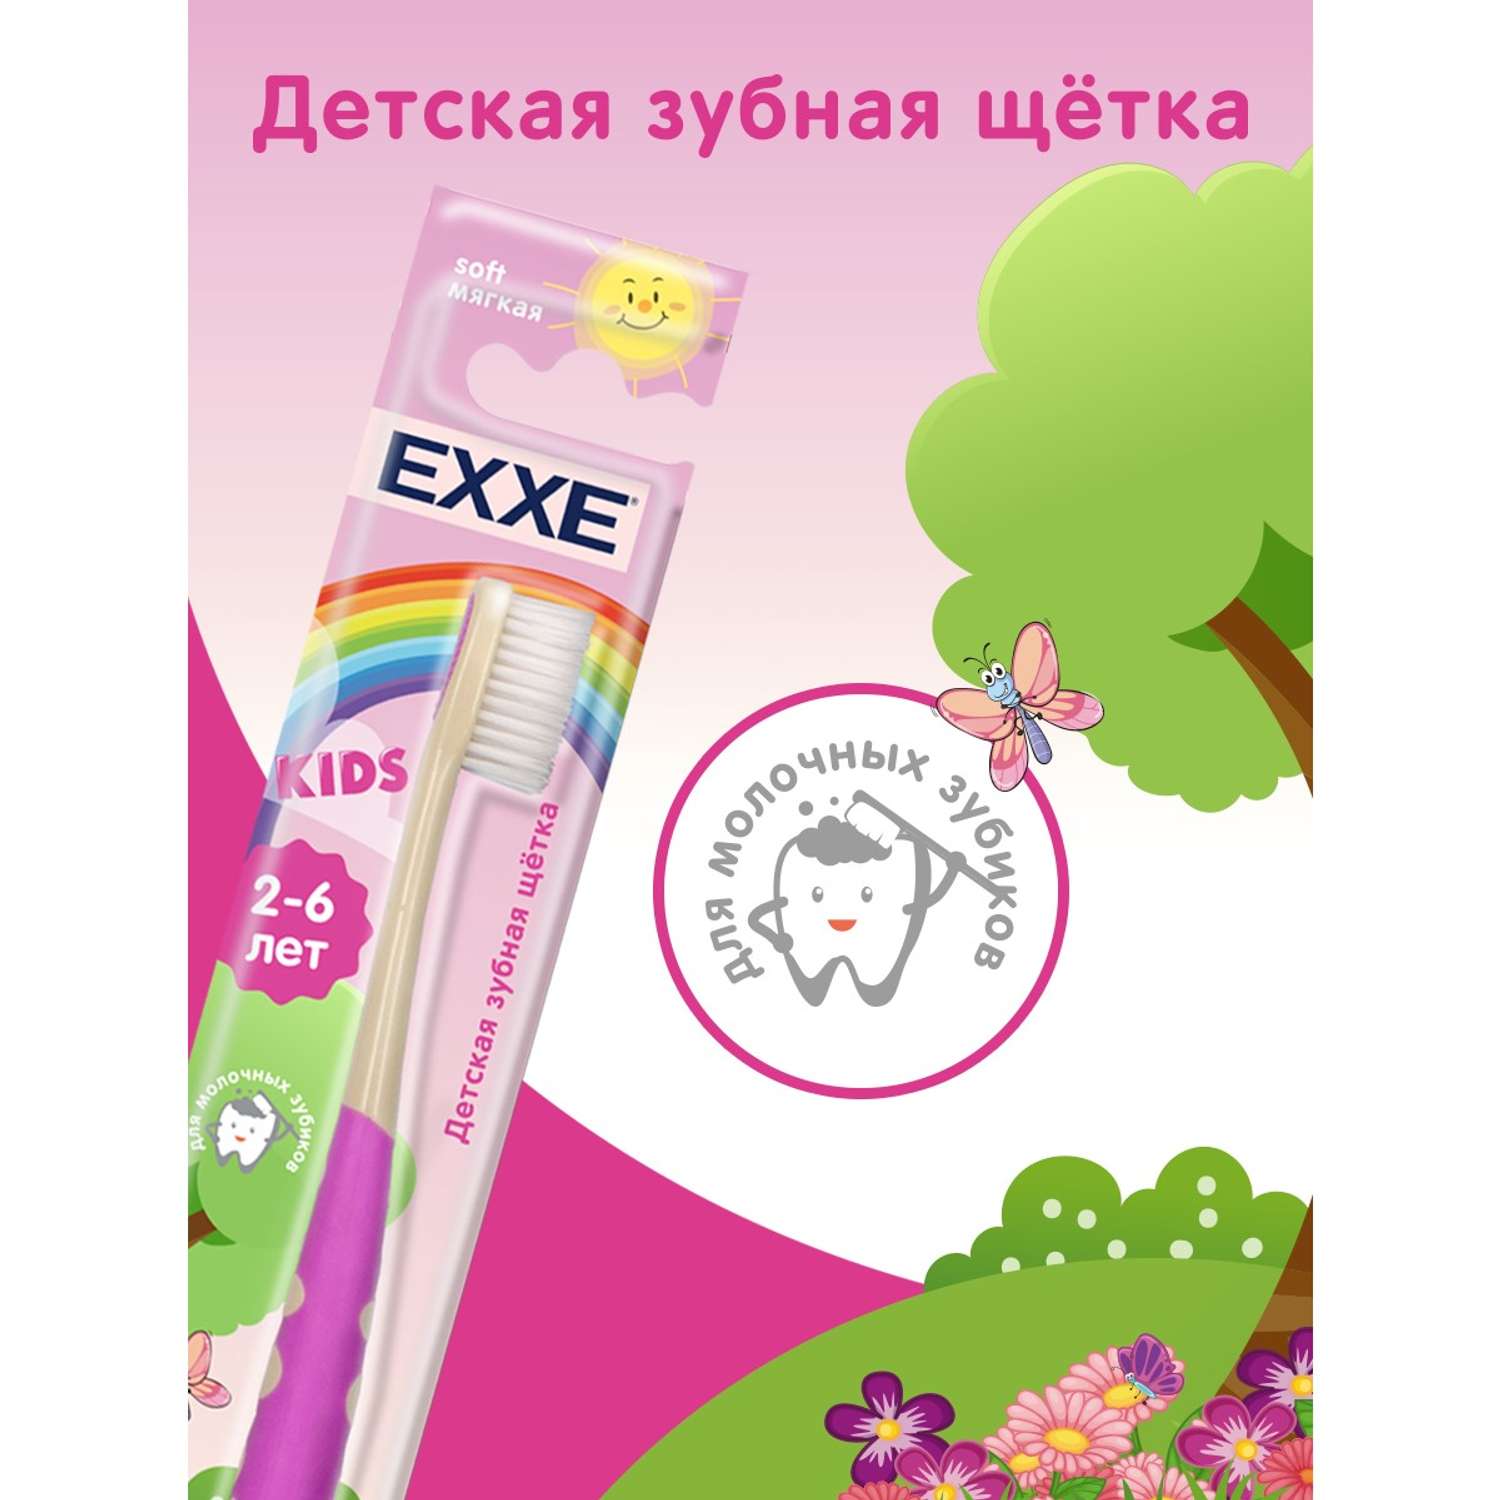 Детская зубная щётка EXXE 2-6 лет мягкая - фото 3